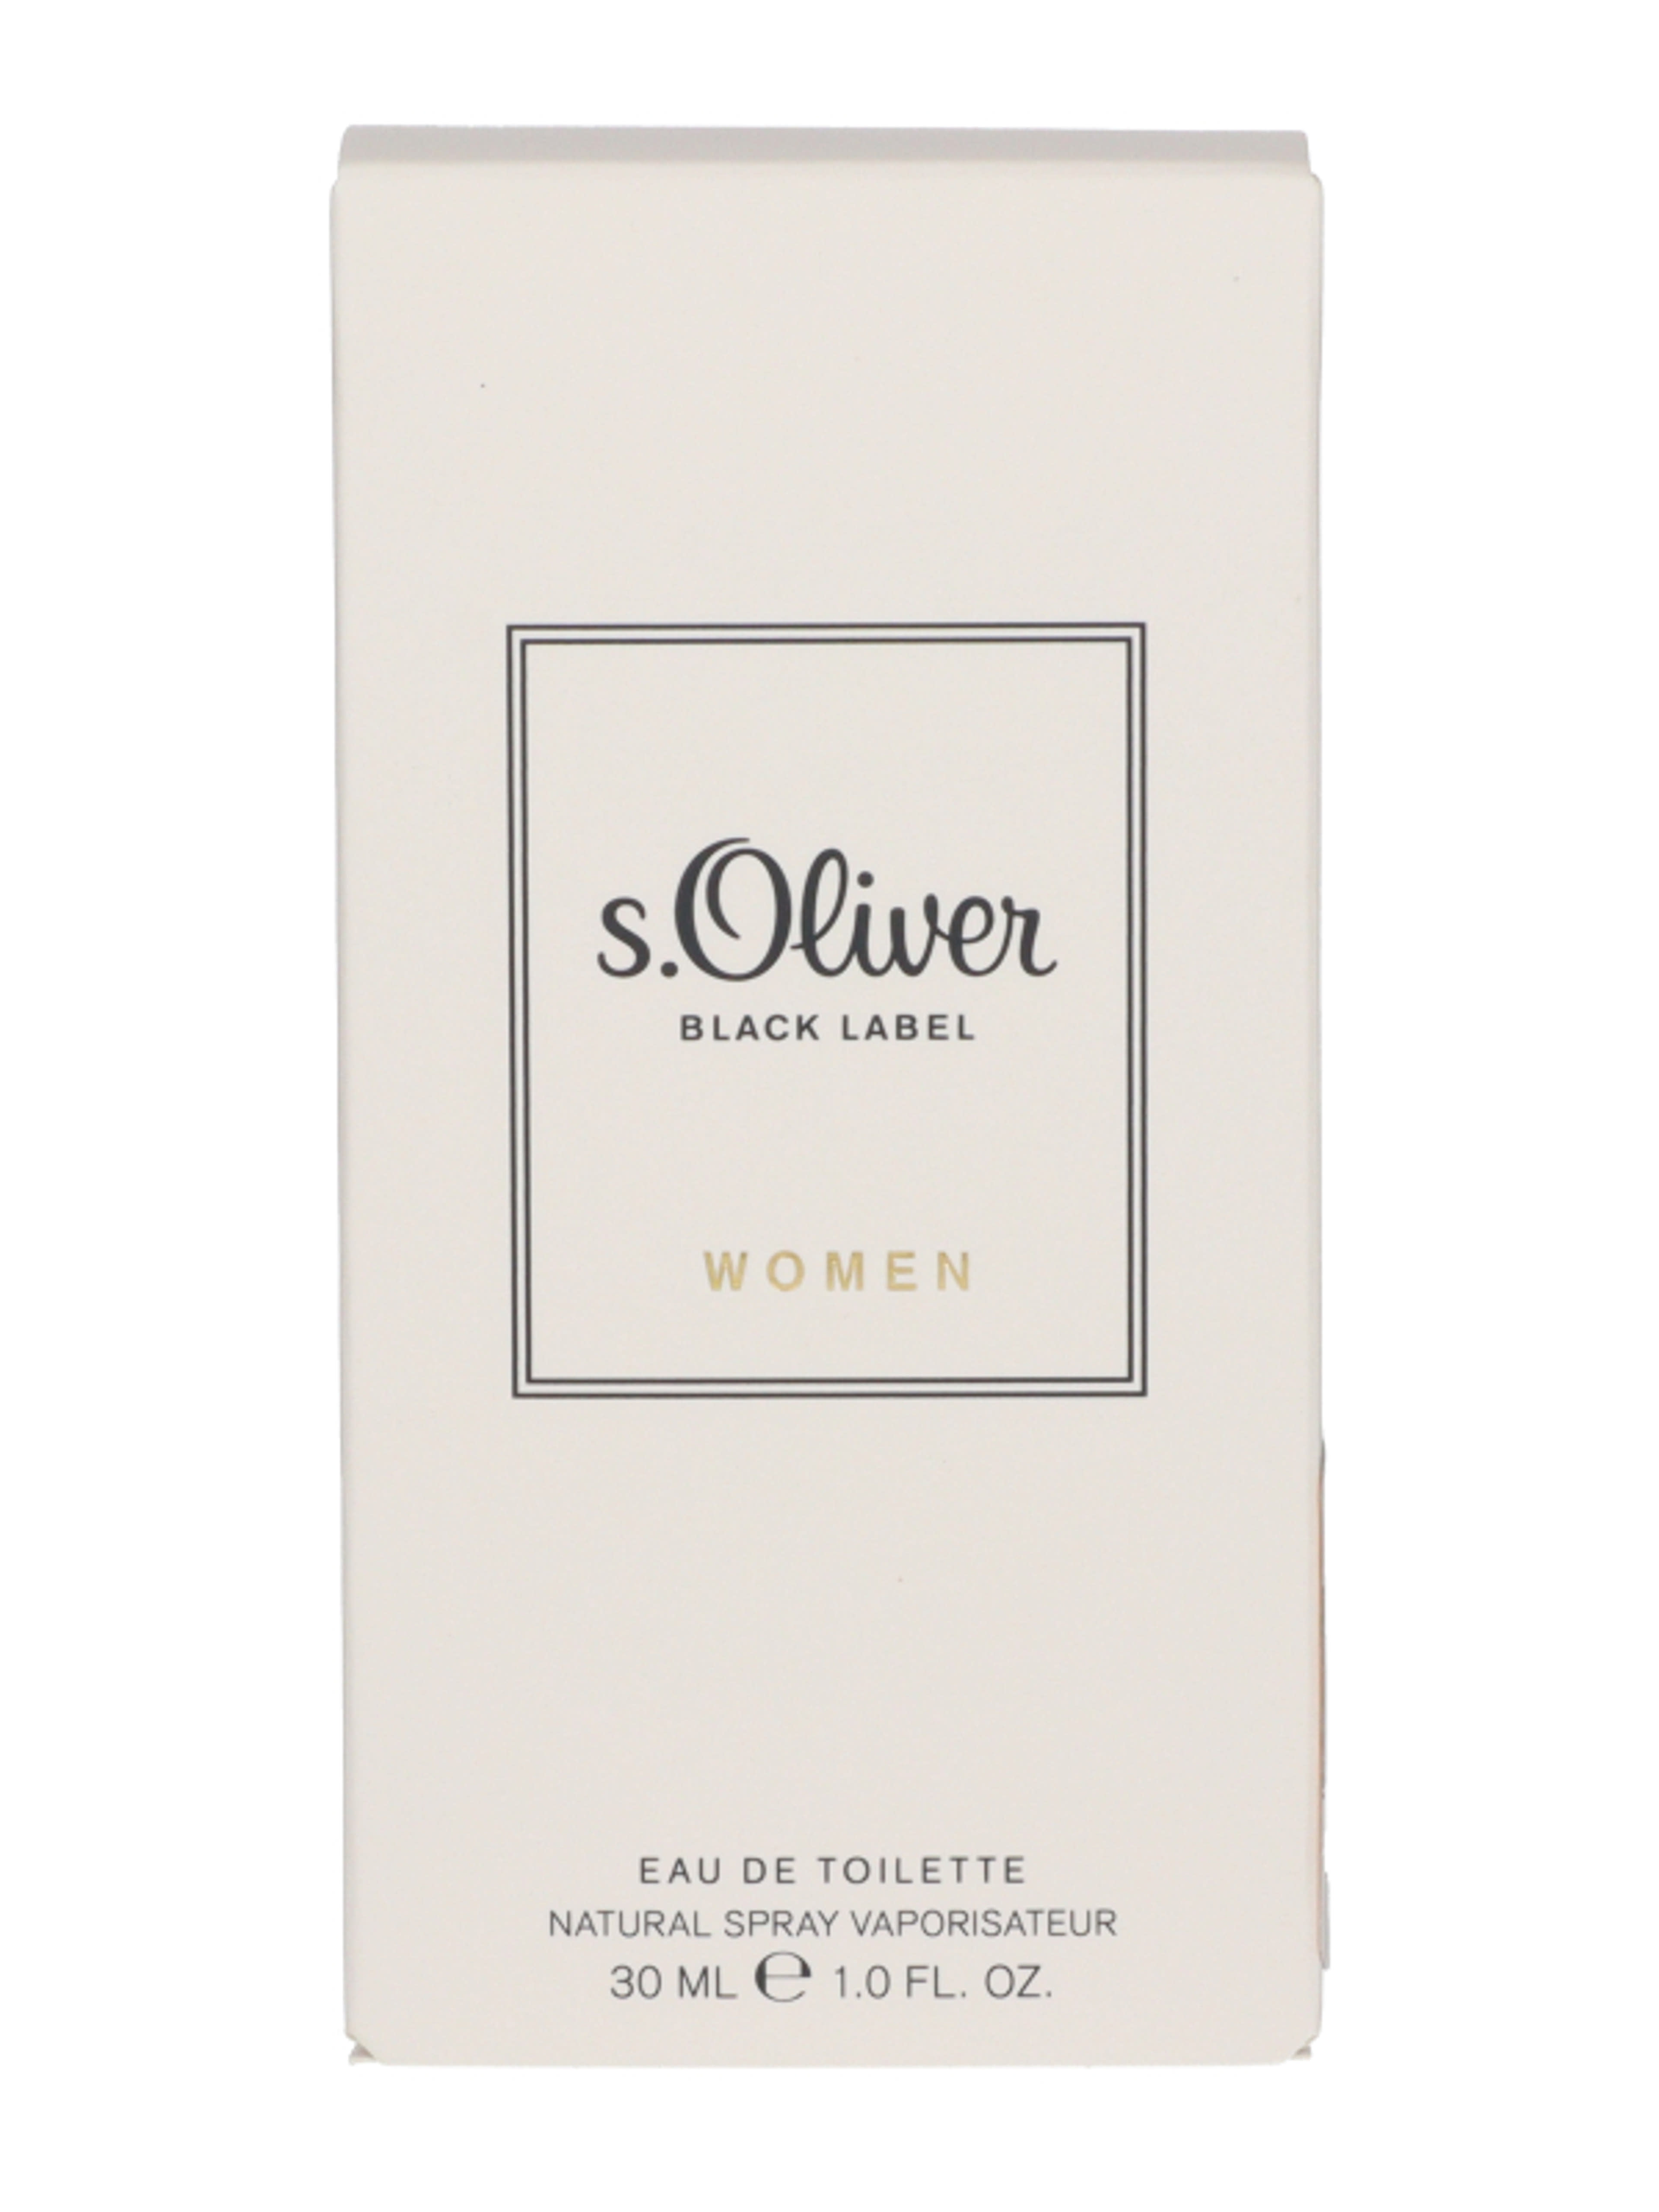 S.Oliver Black Label noi Eau de Toilette - 30 ml-3